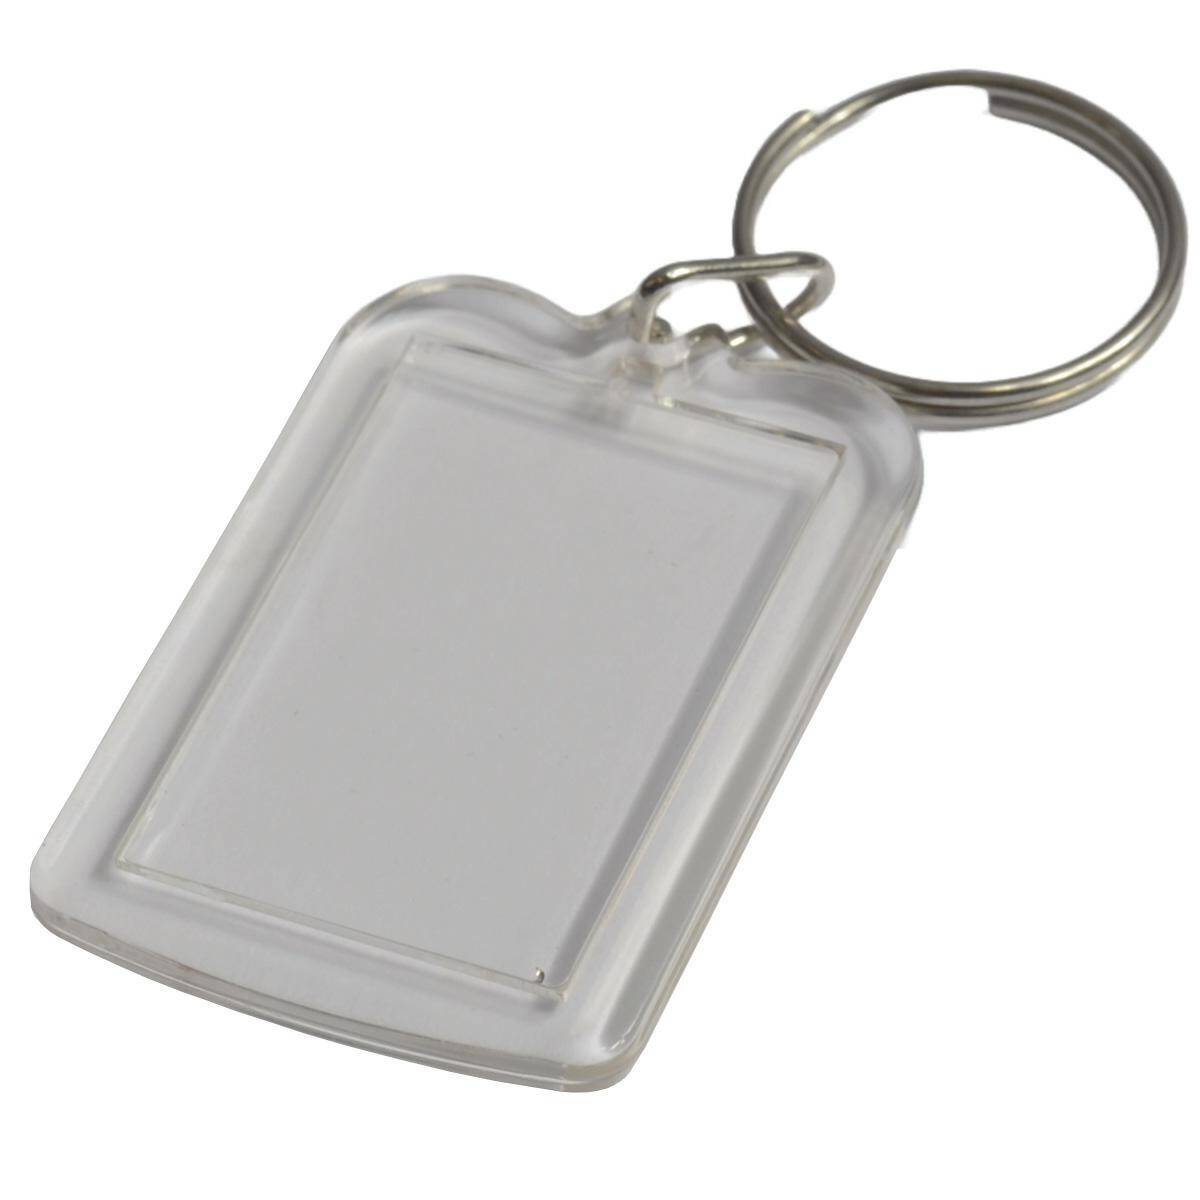 Acrylic keychain - 25mm x 37mm